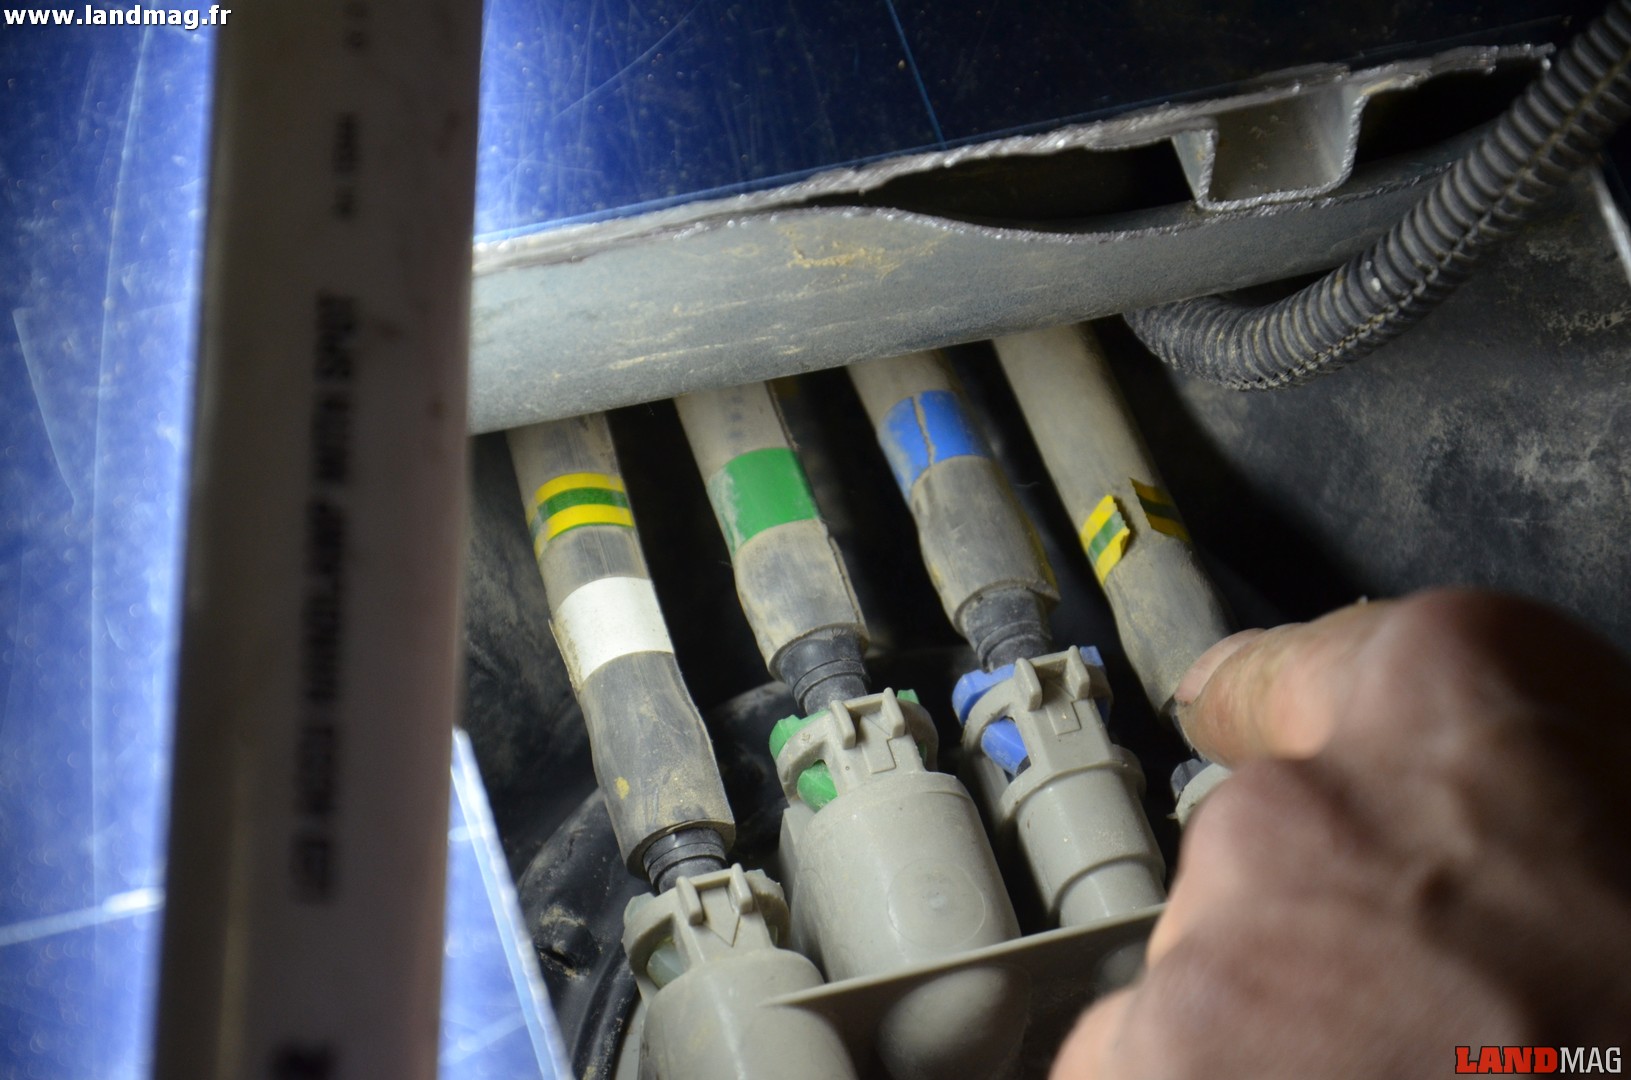 13- Noter le code couleur des tuyaux de carburant, ici de gauche à droite Blanc/Vert/Bleu/Noir. Le code couleur est marqué sur les tuyaux et sur leurs ergots de fixation. 